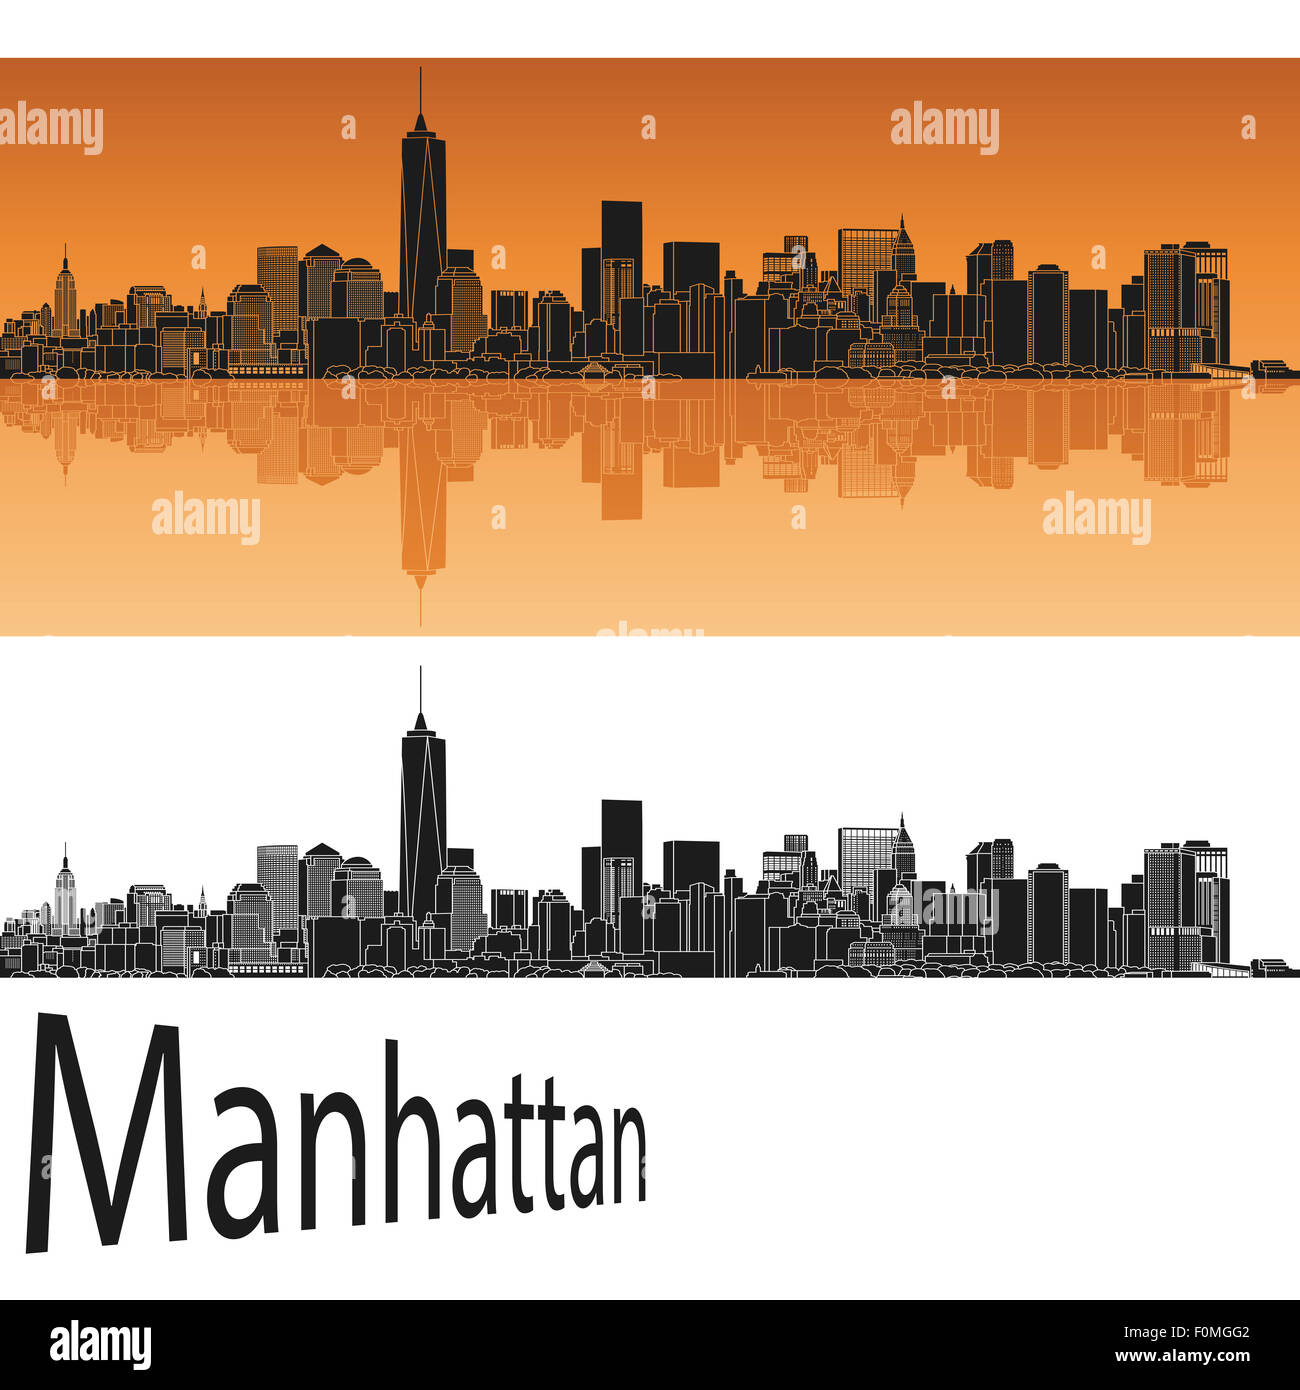 Manhattan en fond orange en fichier vectoriel éditable Banque D'Images